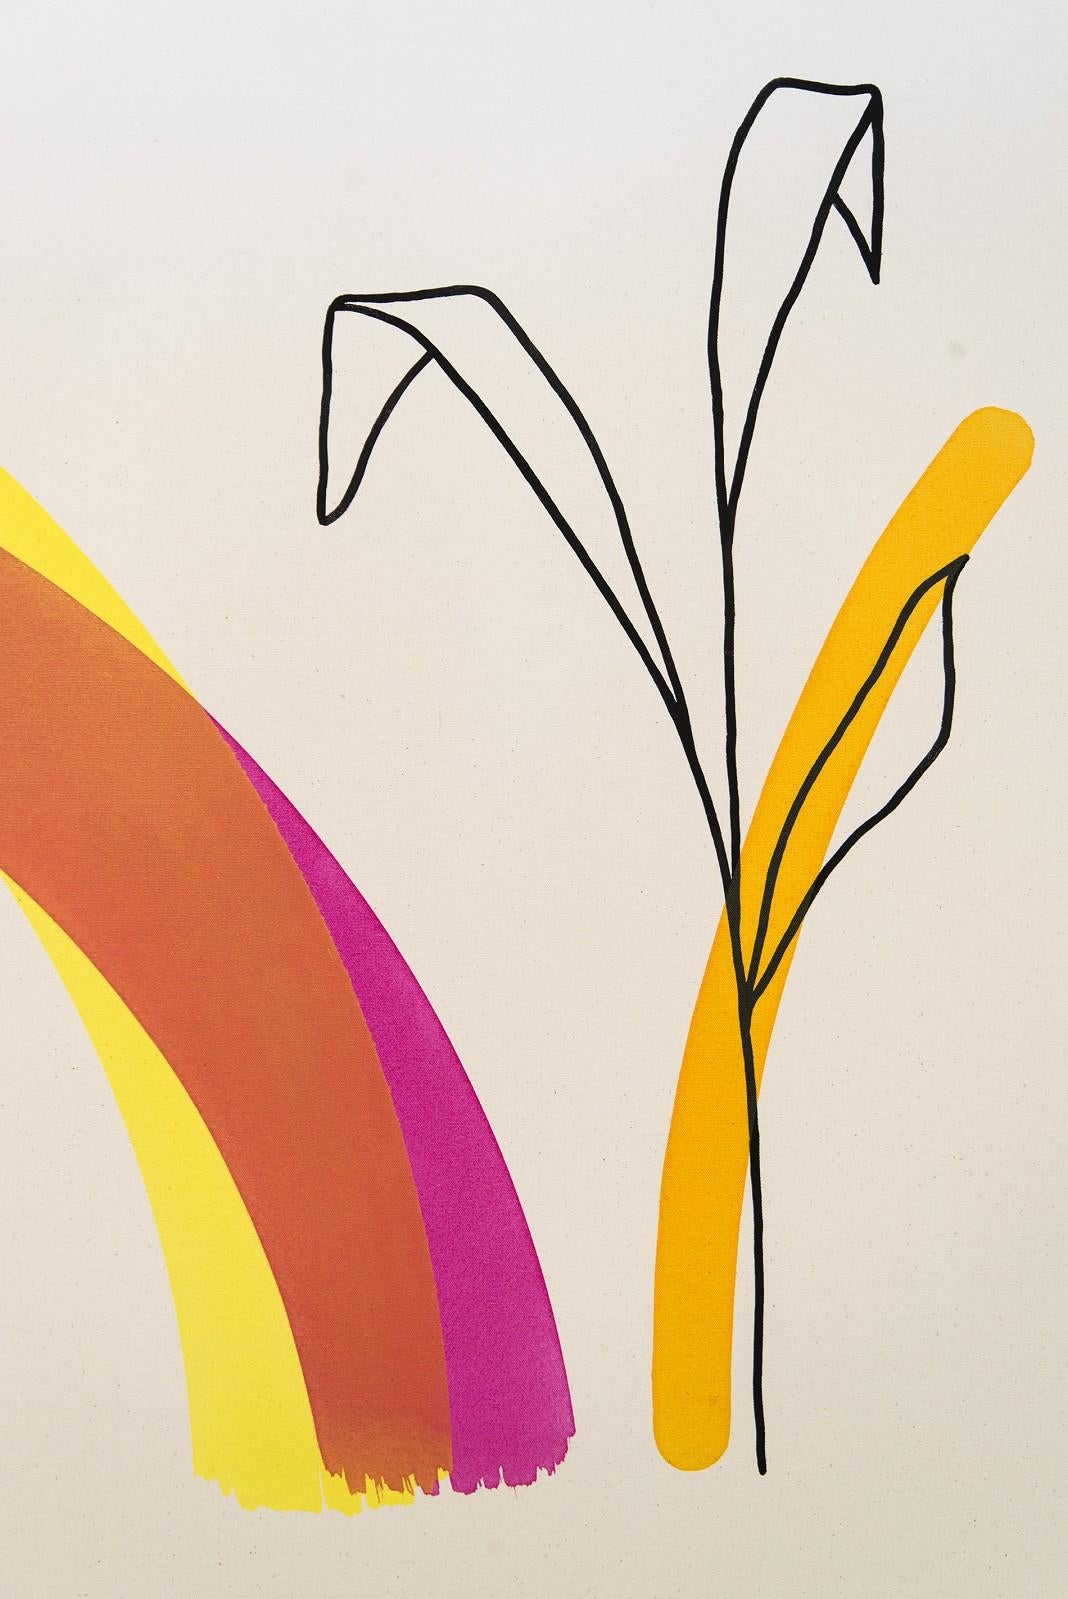 Geometrische Formen, kräftige Farben - Königsblau, heißes Pink, Gelb und ein einziger Strich in Orange - schaffen eine frische und verspielte abstrakte Komposition in diesem neuen Werk des Künstlers Aron Hill aus Calgary. Das Auge des Betrachters